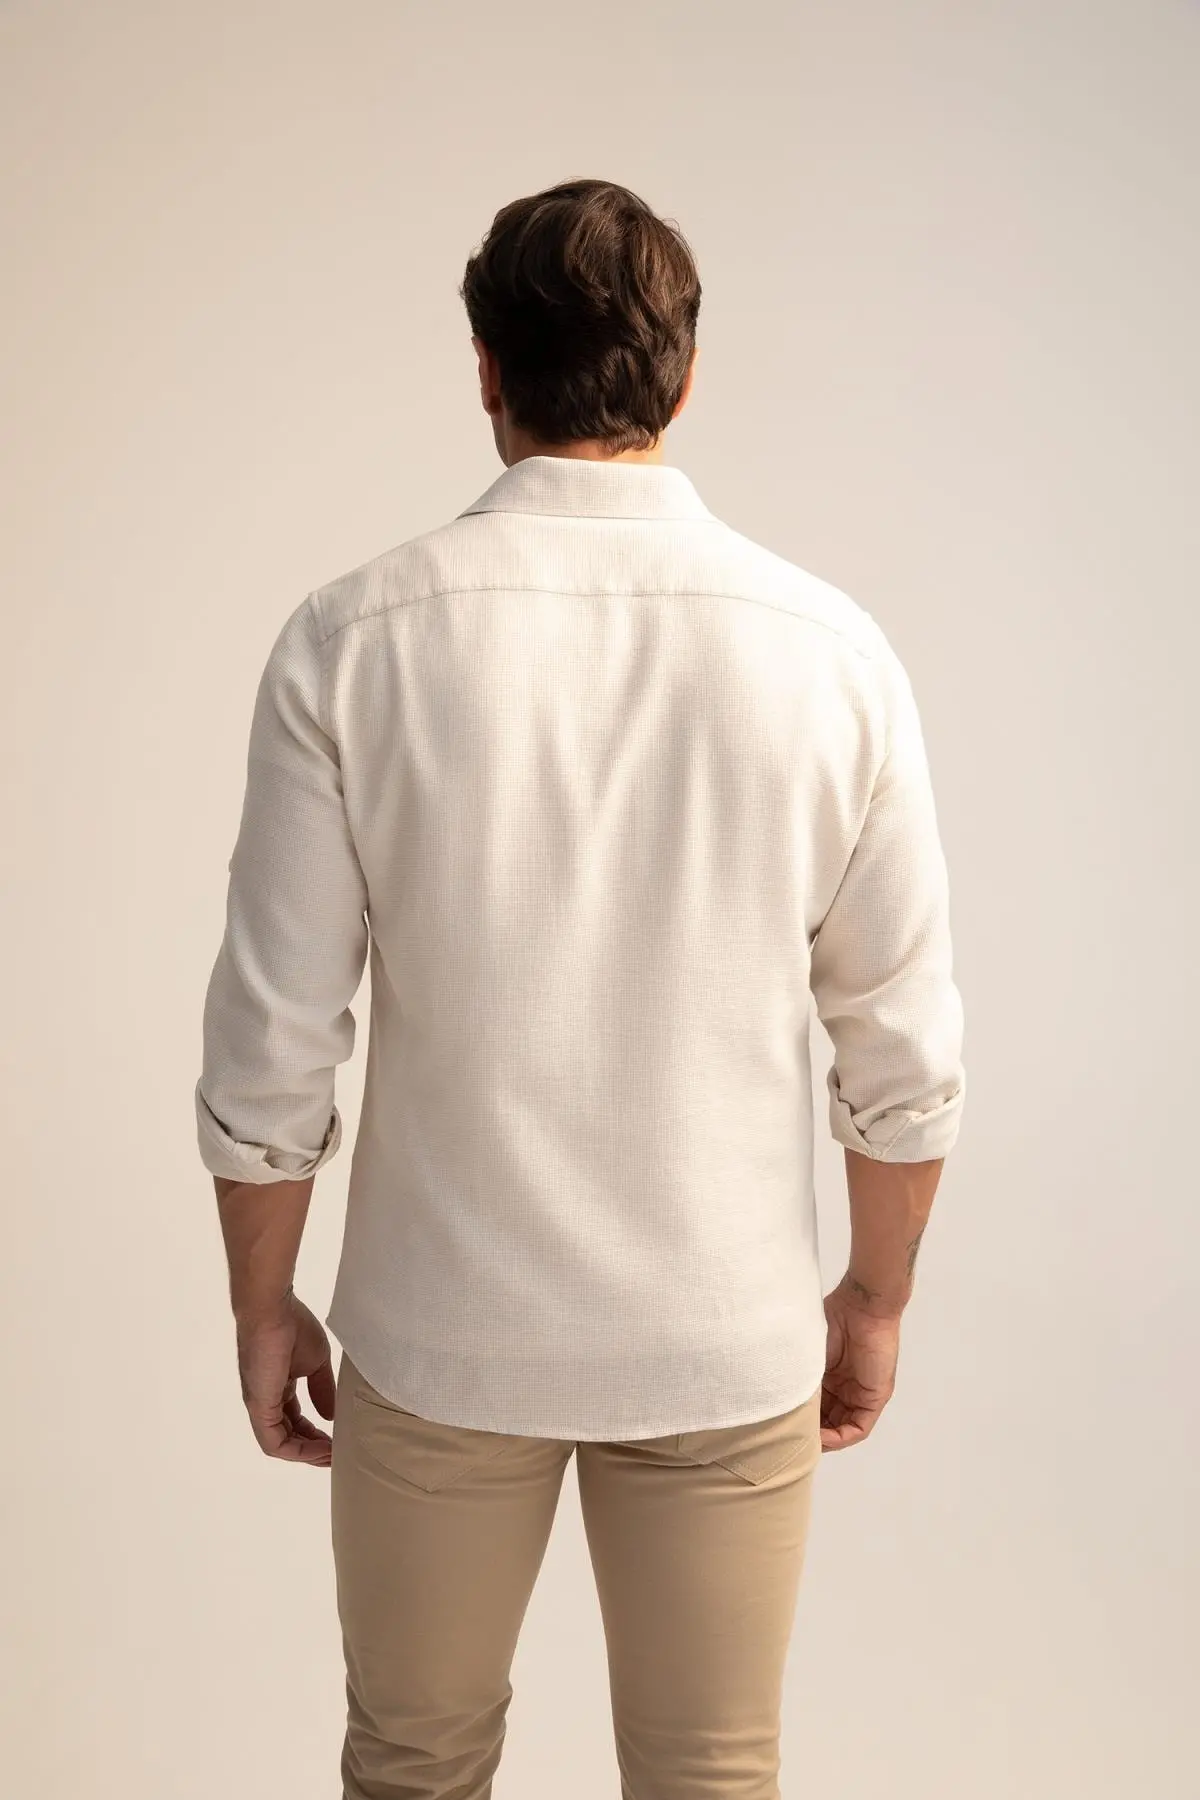 پیراهن آستین بلند یقه کلاسیک دو جیب مردانه استخوانی برند Defacto